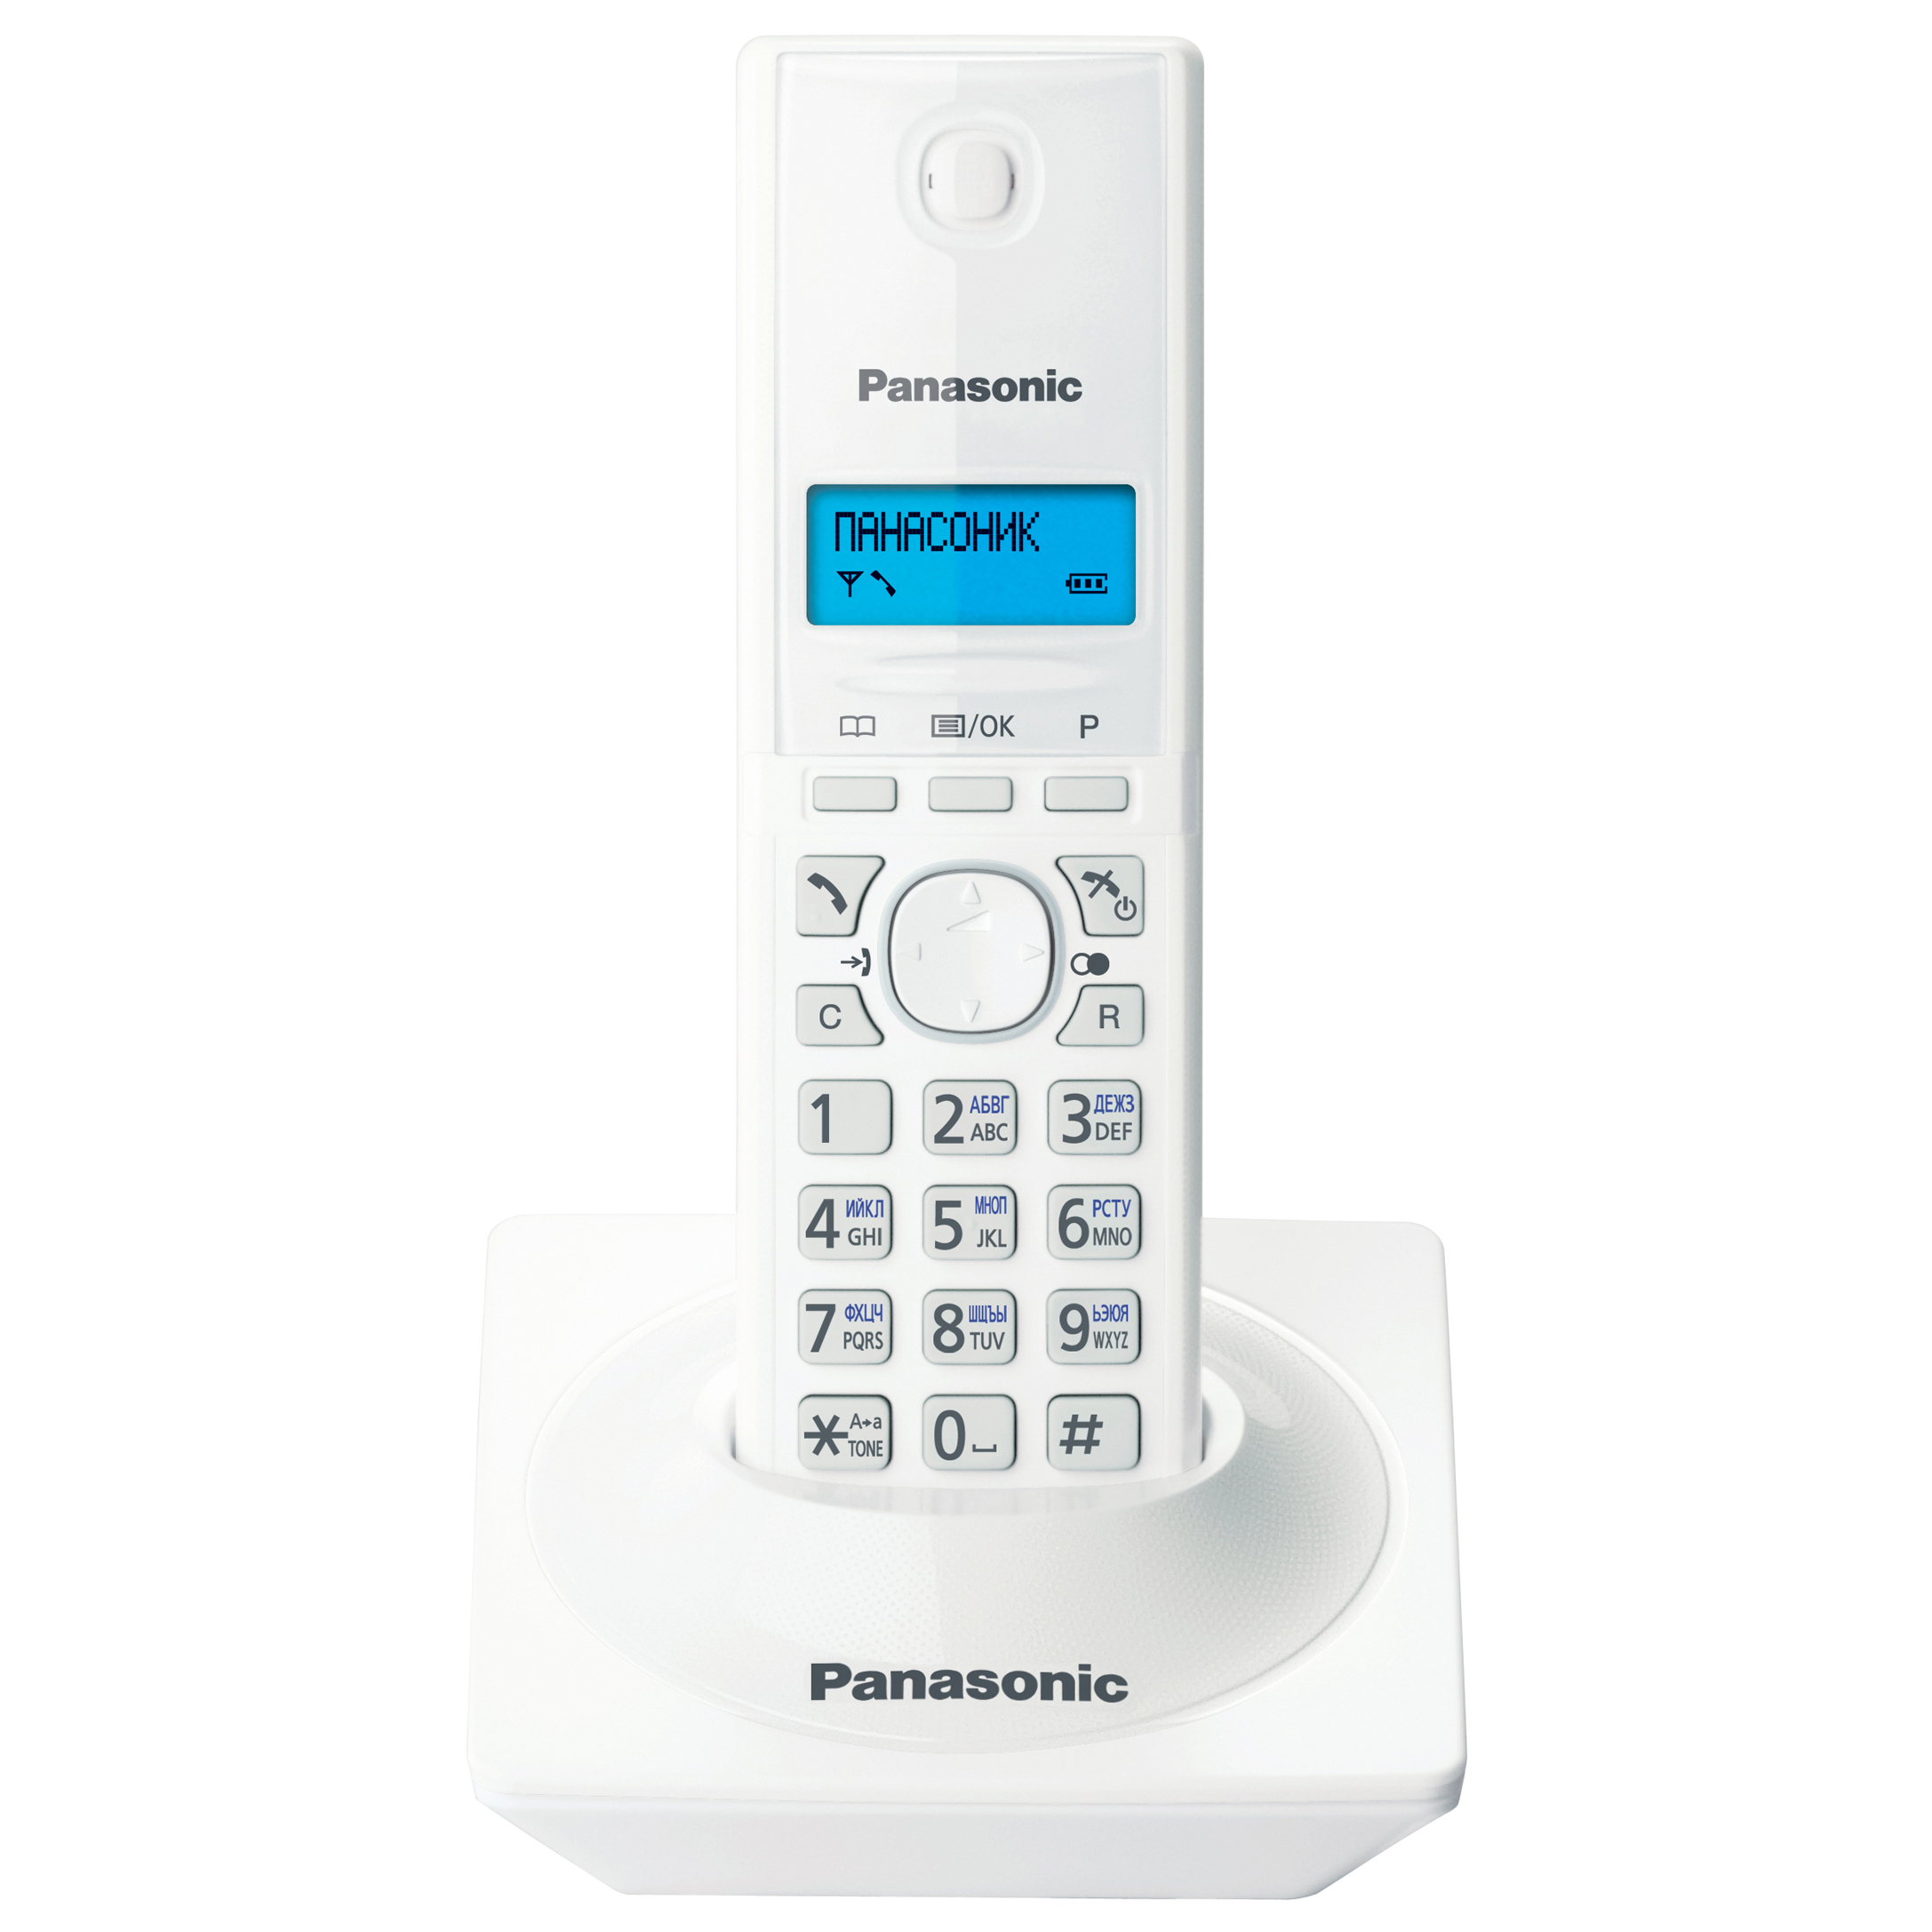 Телефон с радиотрубкой. KX-tg1711uaw. Panasonic KX-tg1711 ruw White. KX-tg1611uah Panasonic DECT. Радиотелефон Panasonic KX-tg1711ru.